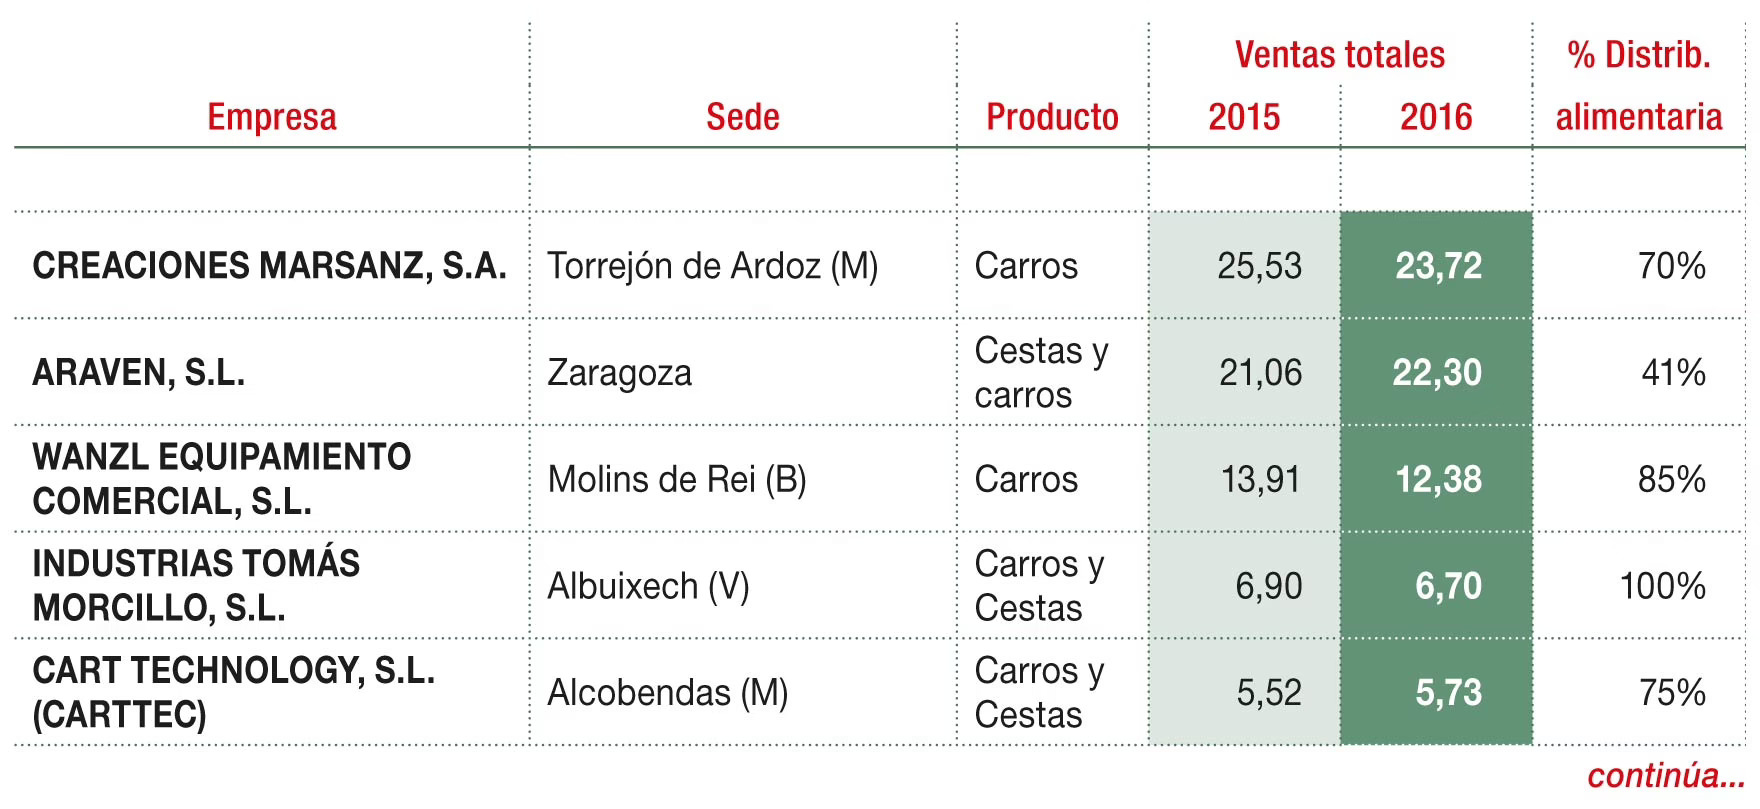 Principales empresas de carros y cestas para supermercados/hipermercados (M€)